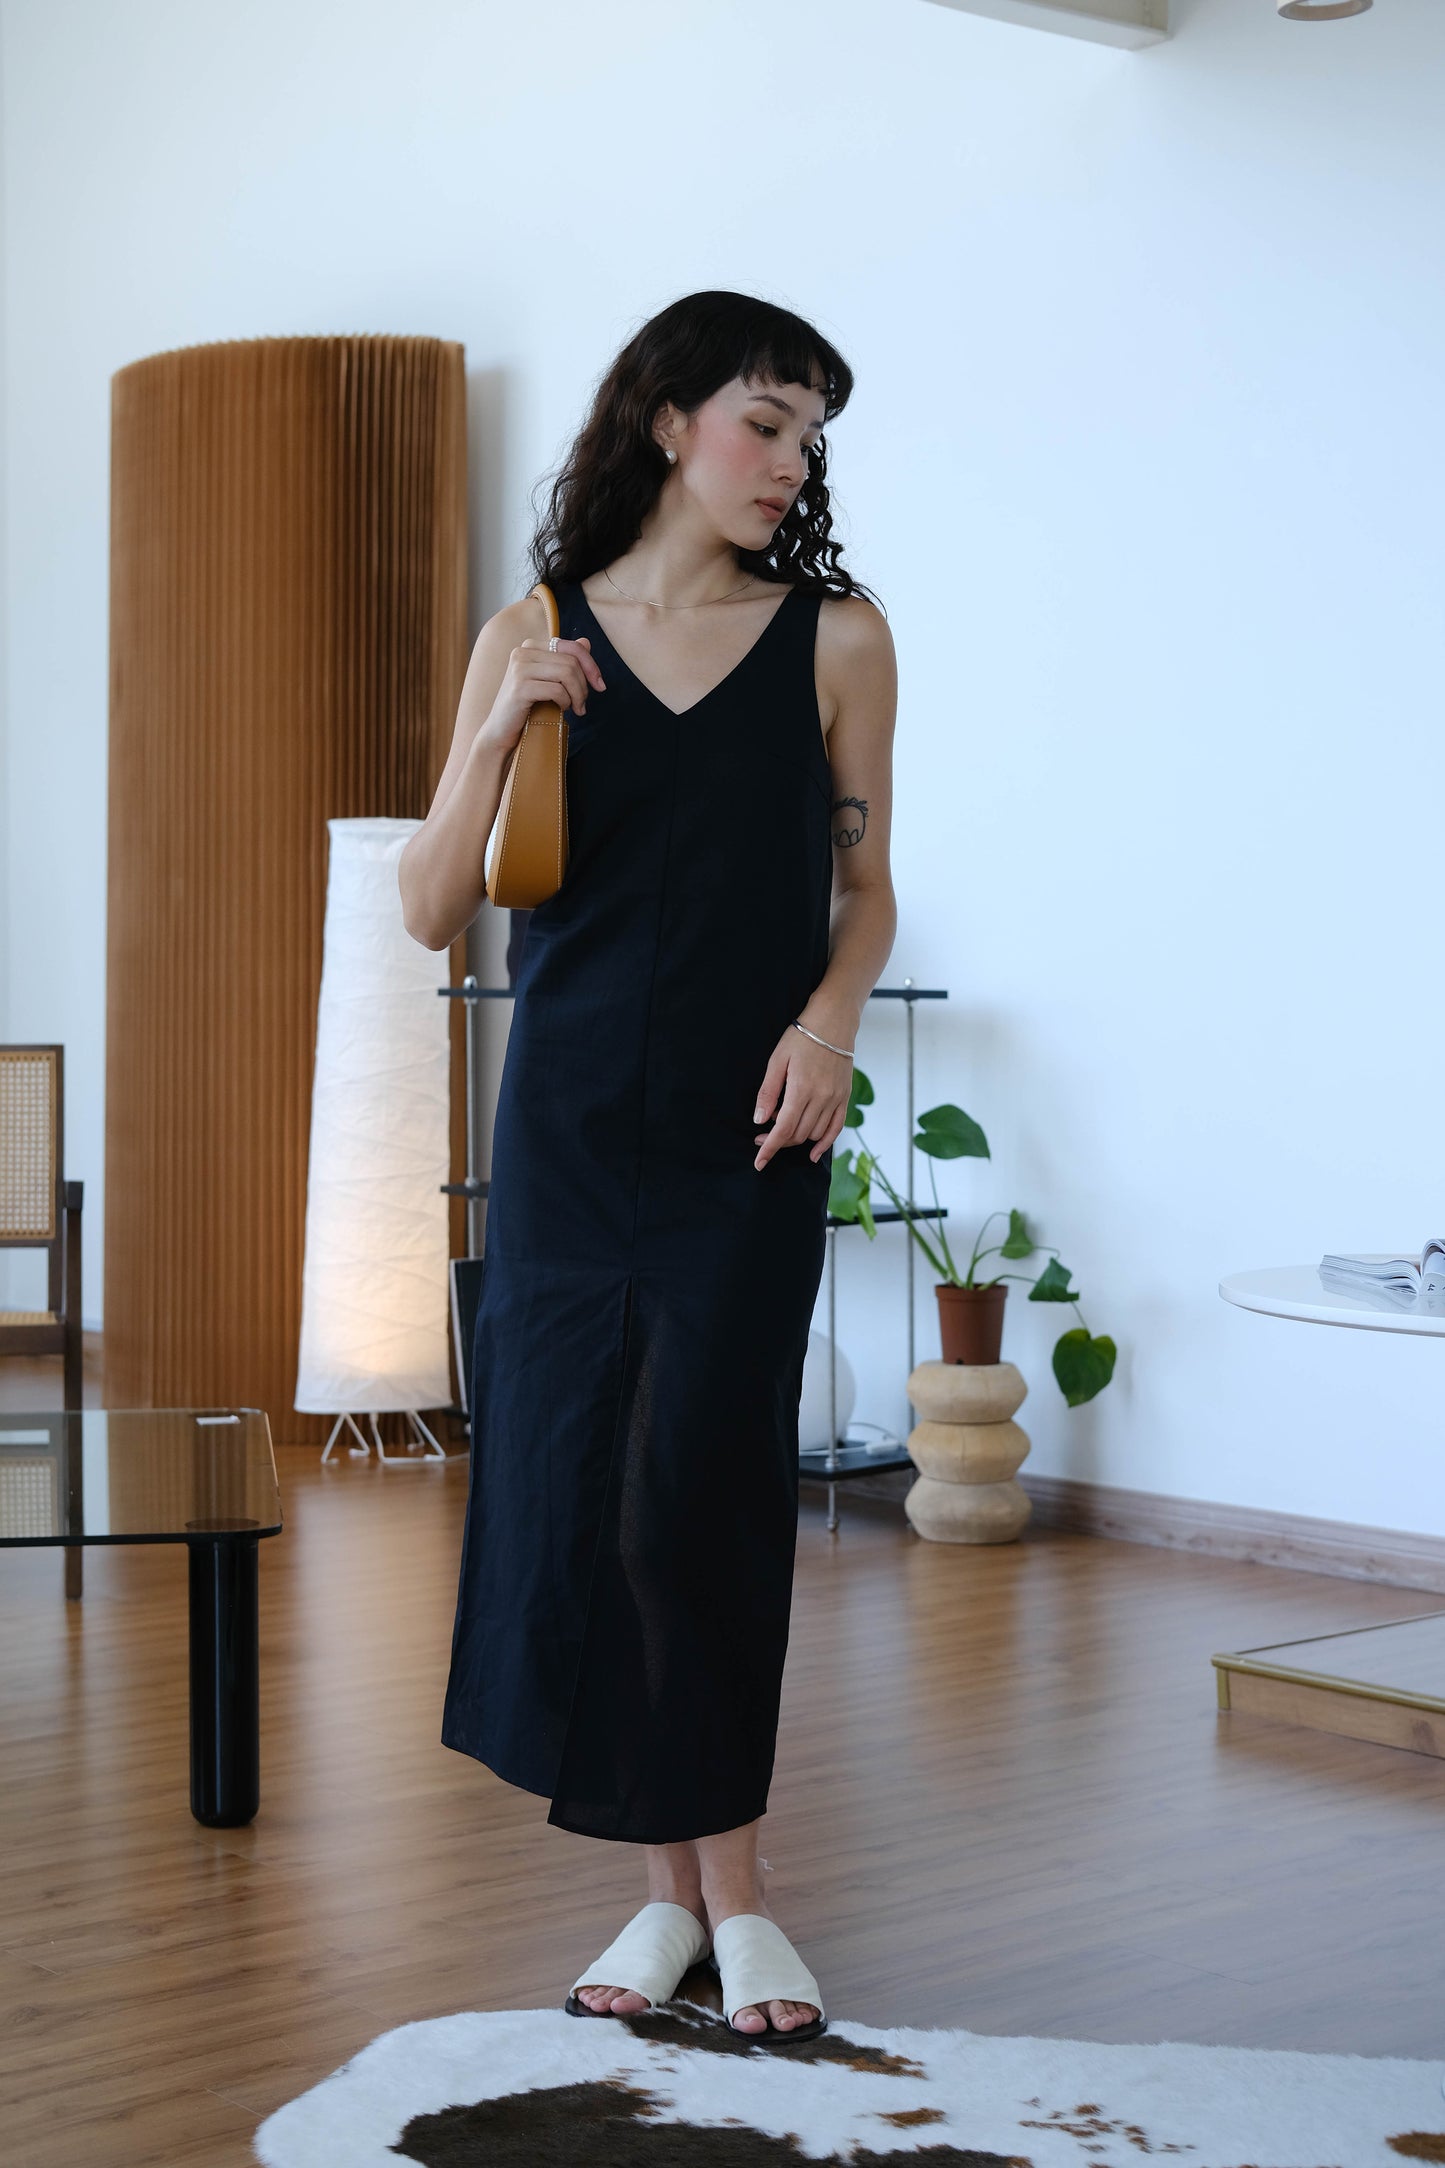 V-neck open back sleeveless dress in classic black